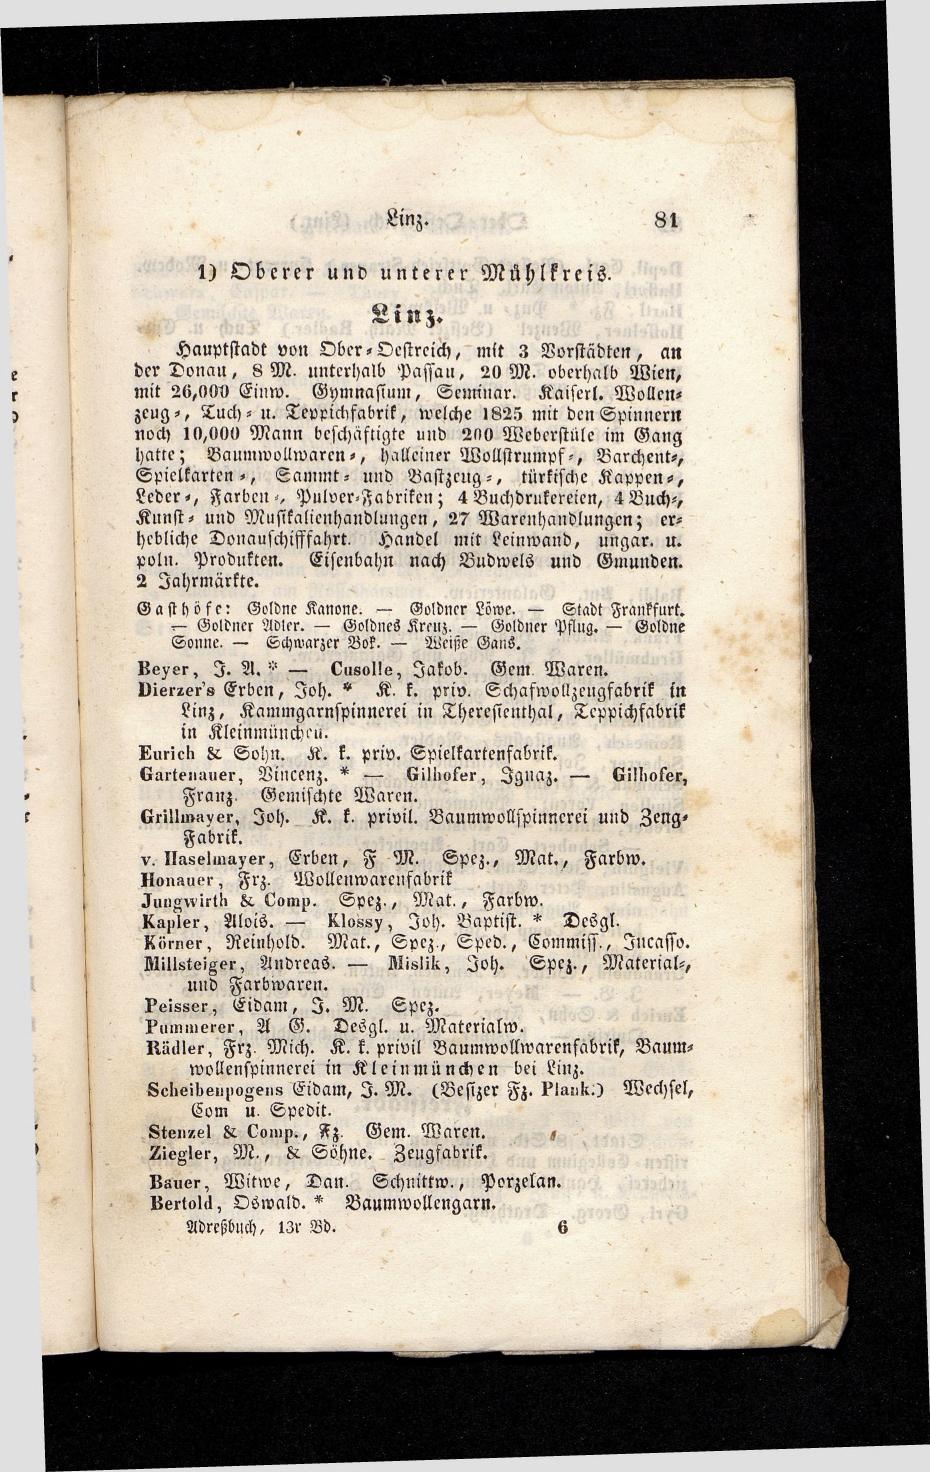 Grosses Adressbuch der Kaufleute. No. 13. Oesterreich ober u. unter der Enns 1844 - Seite 85